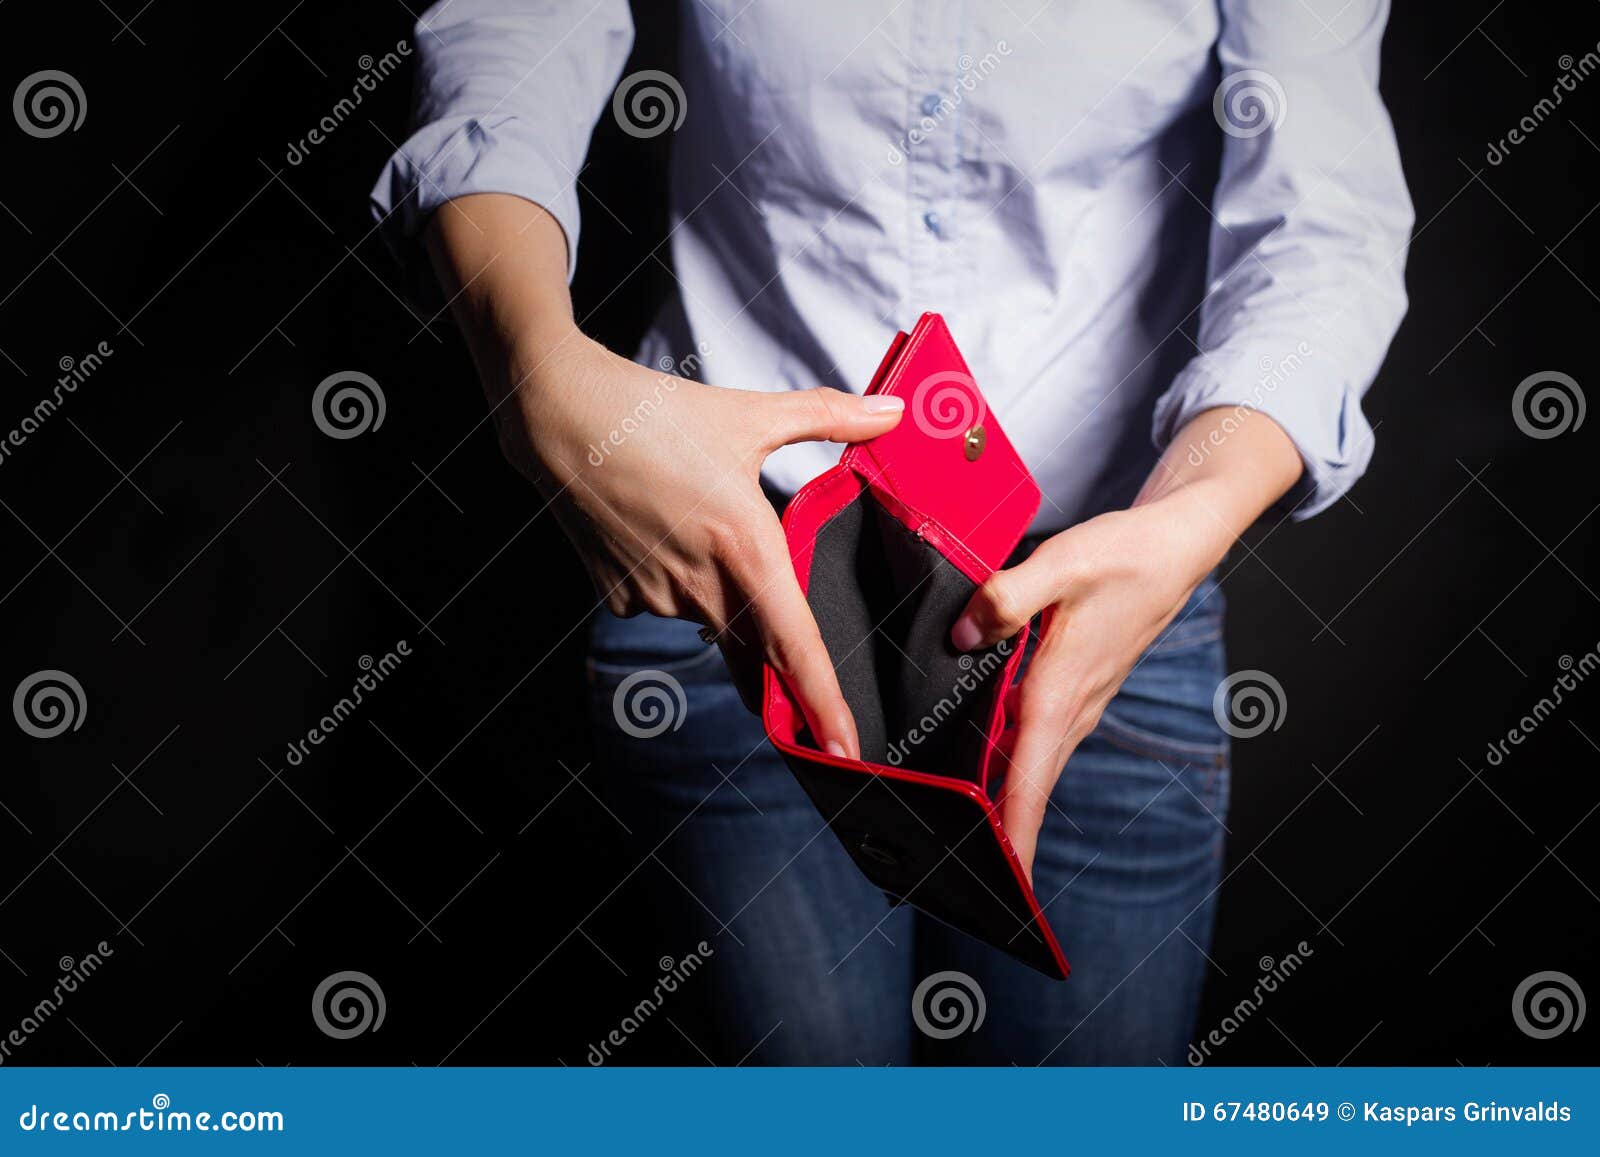 woman showing empty wallet